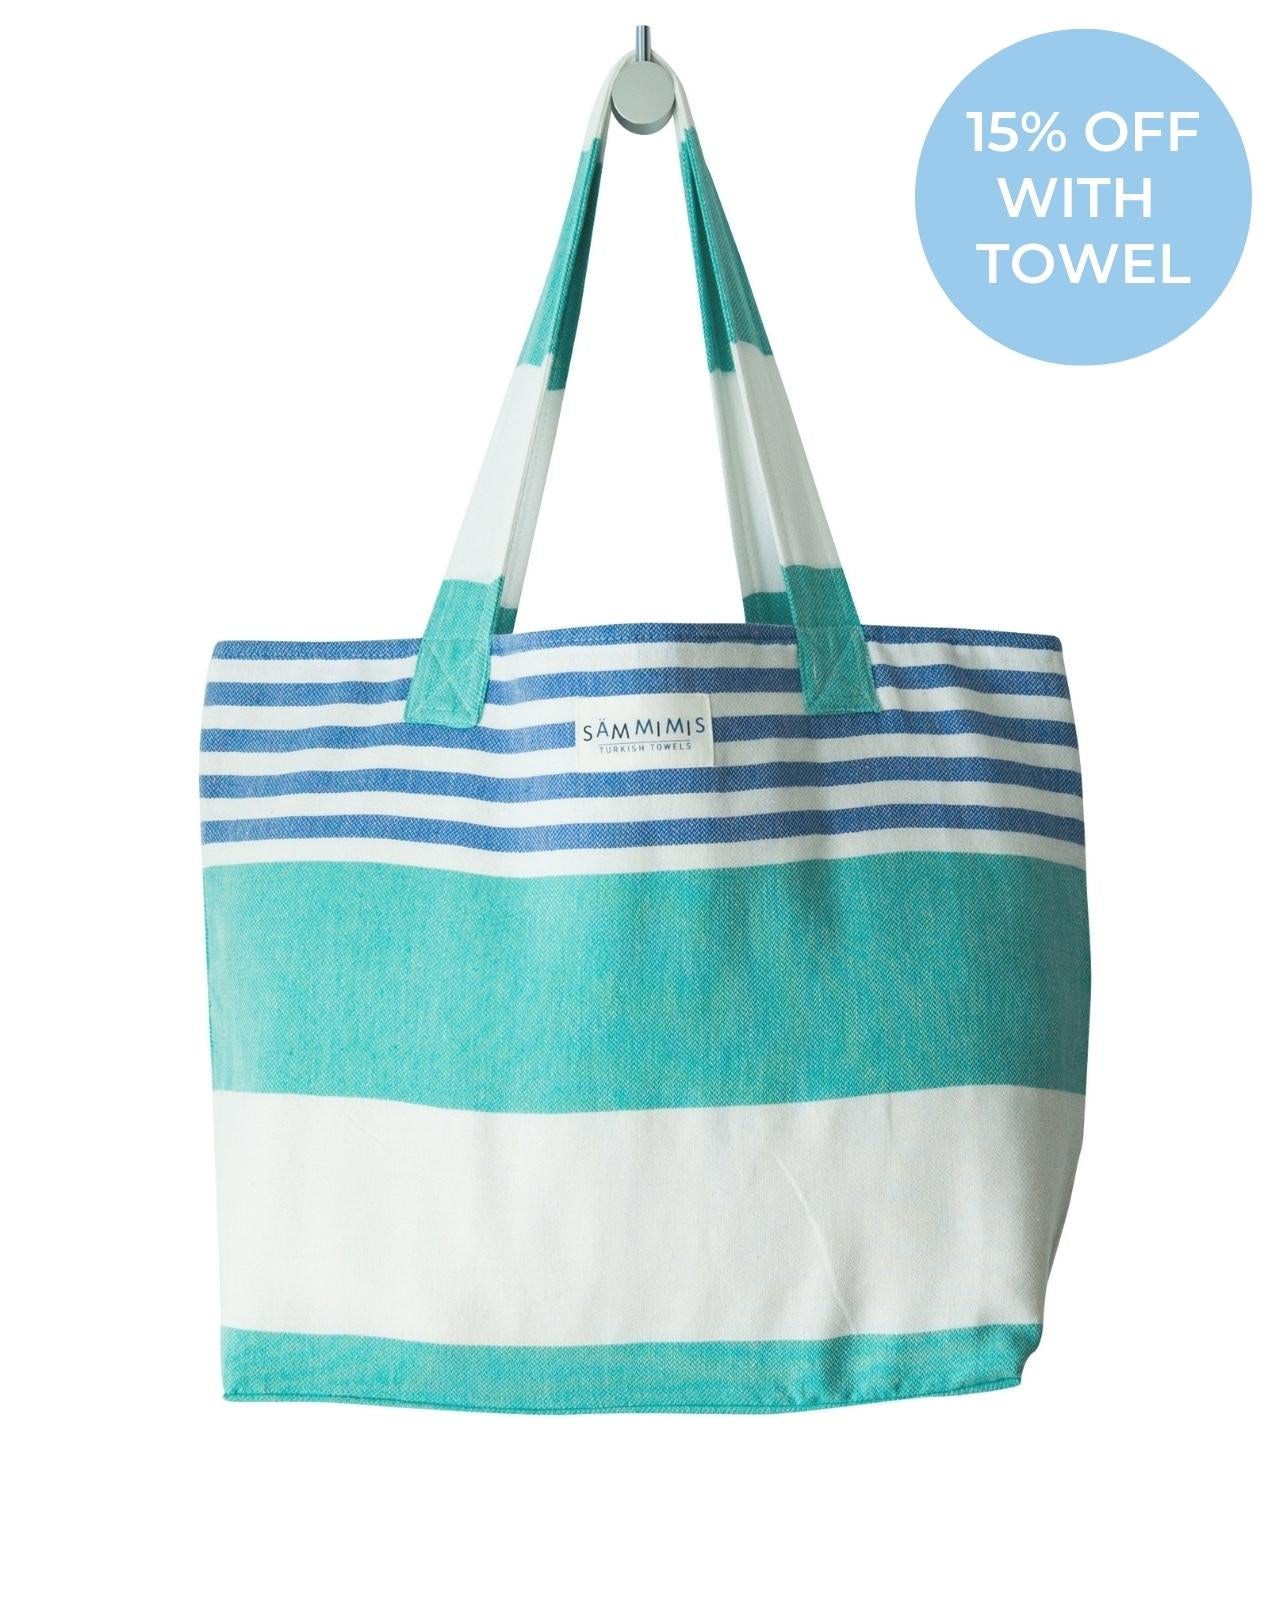 ST TROPEZ Beach Bag: Sea Green/Royal Blue